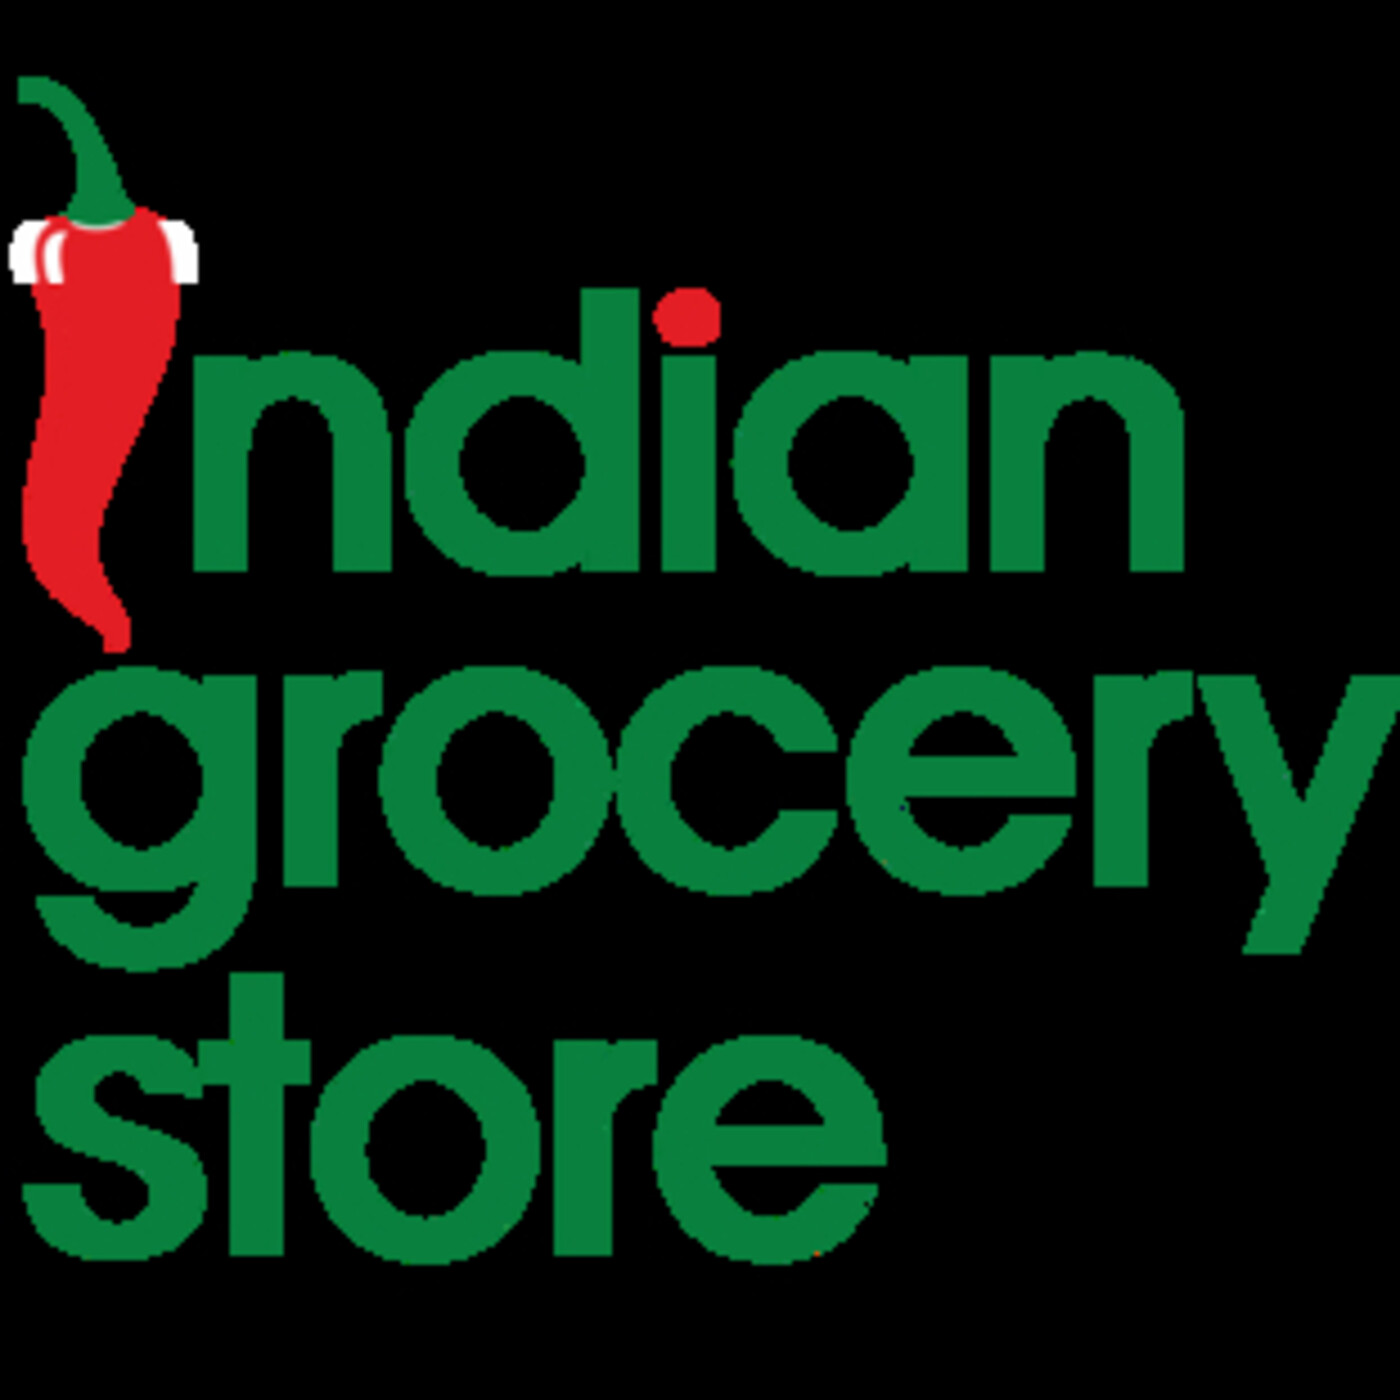 Indian Grocery Store en igs123 en mp3(26/07 a las 12:19:05 ...